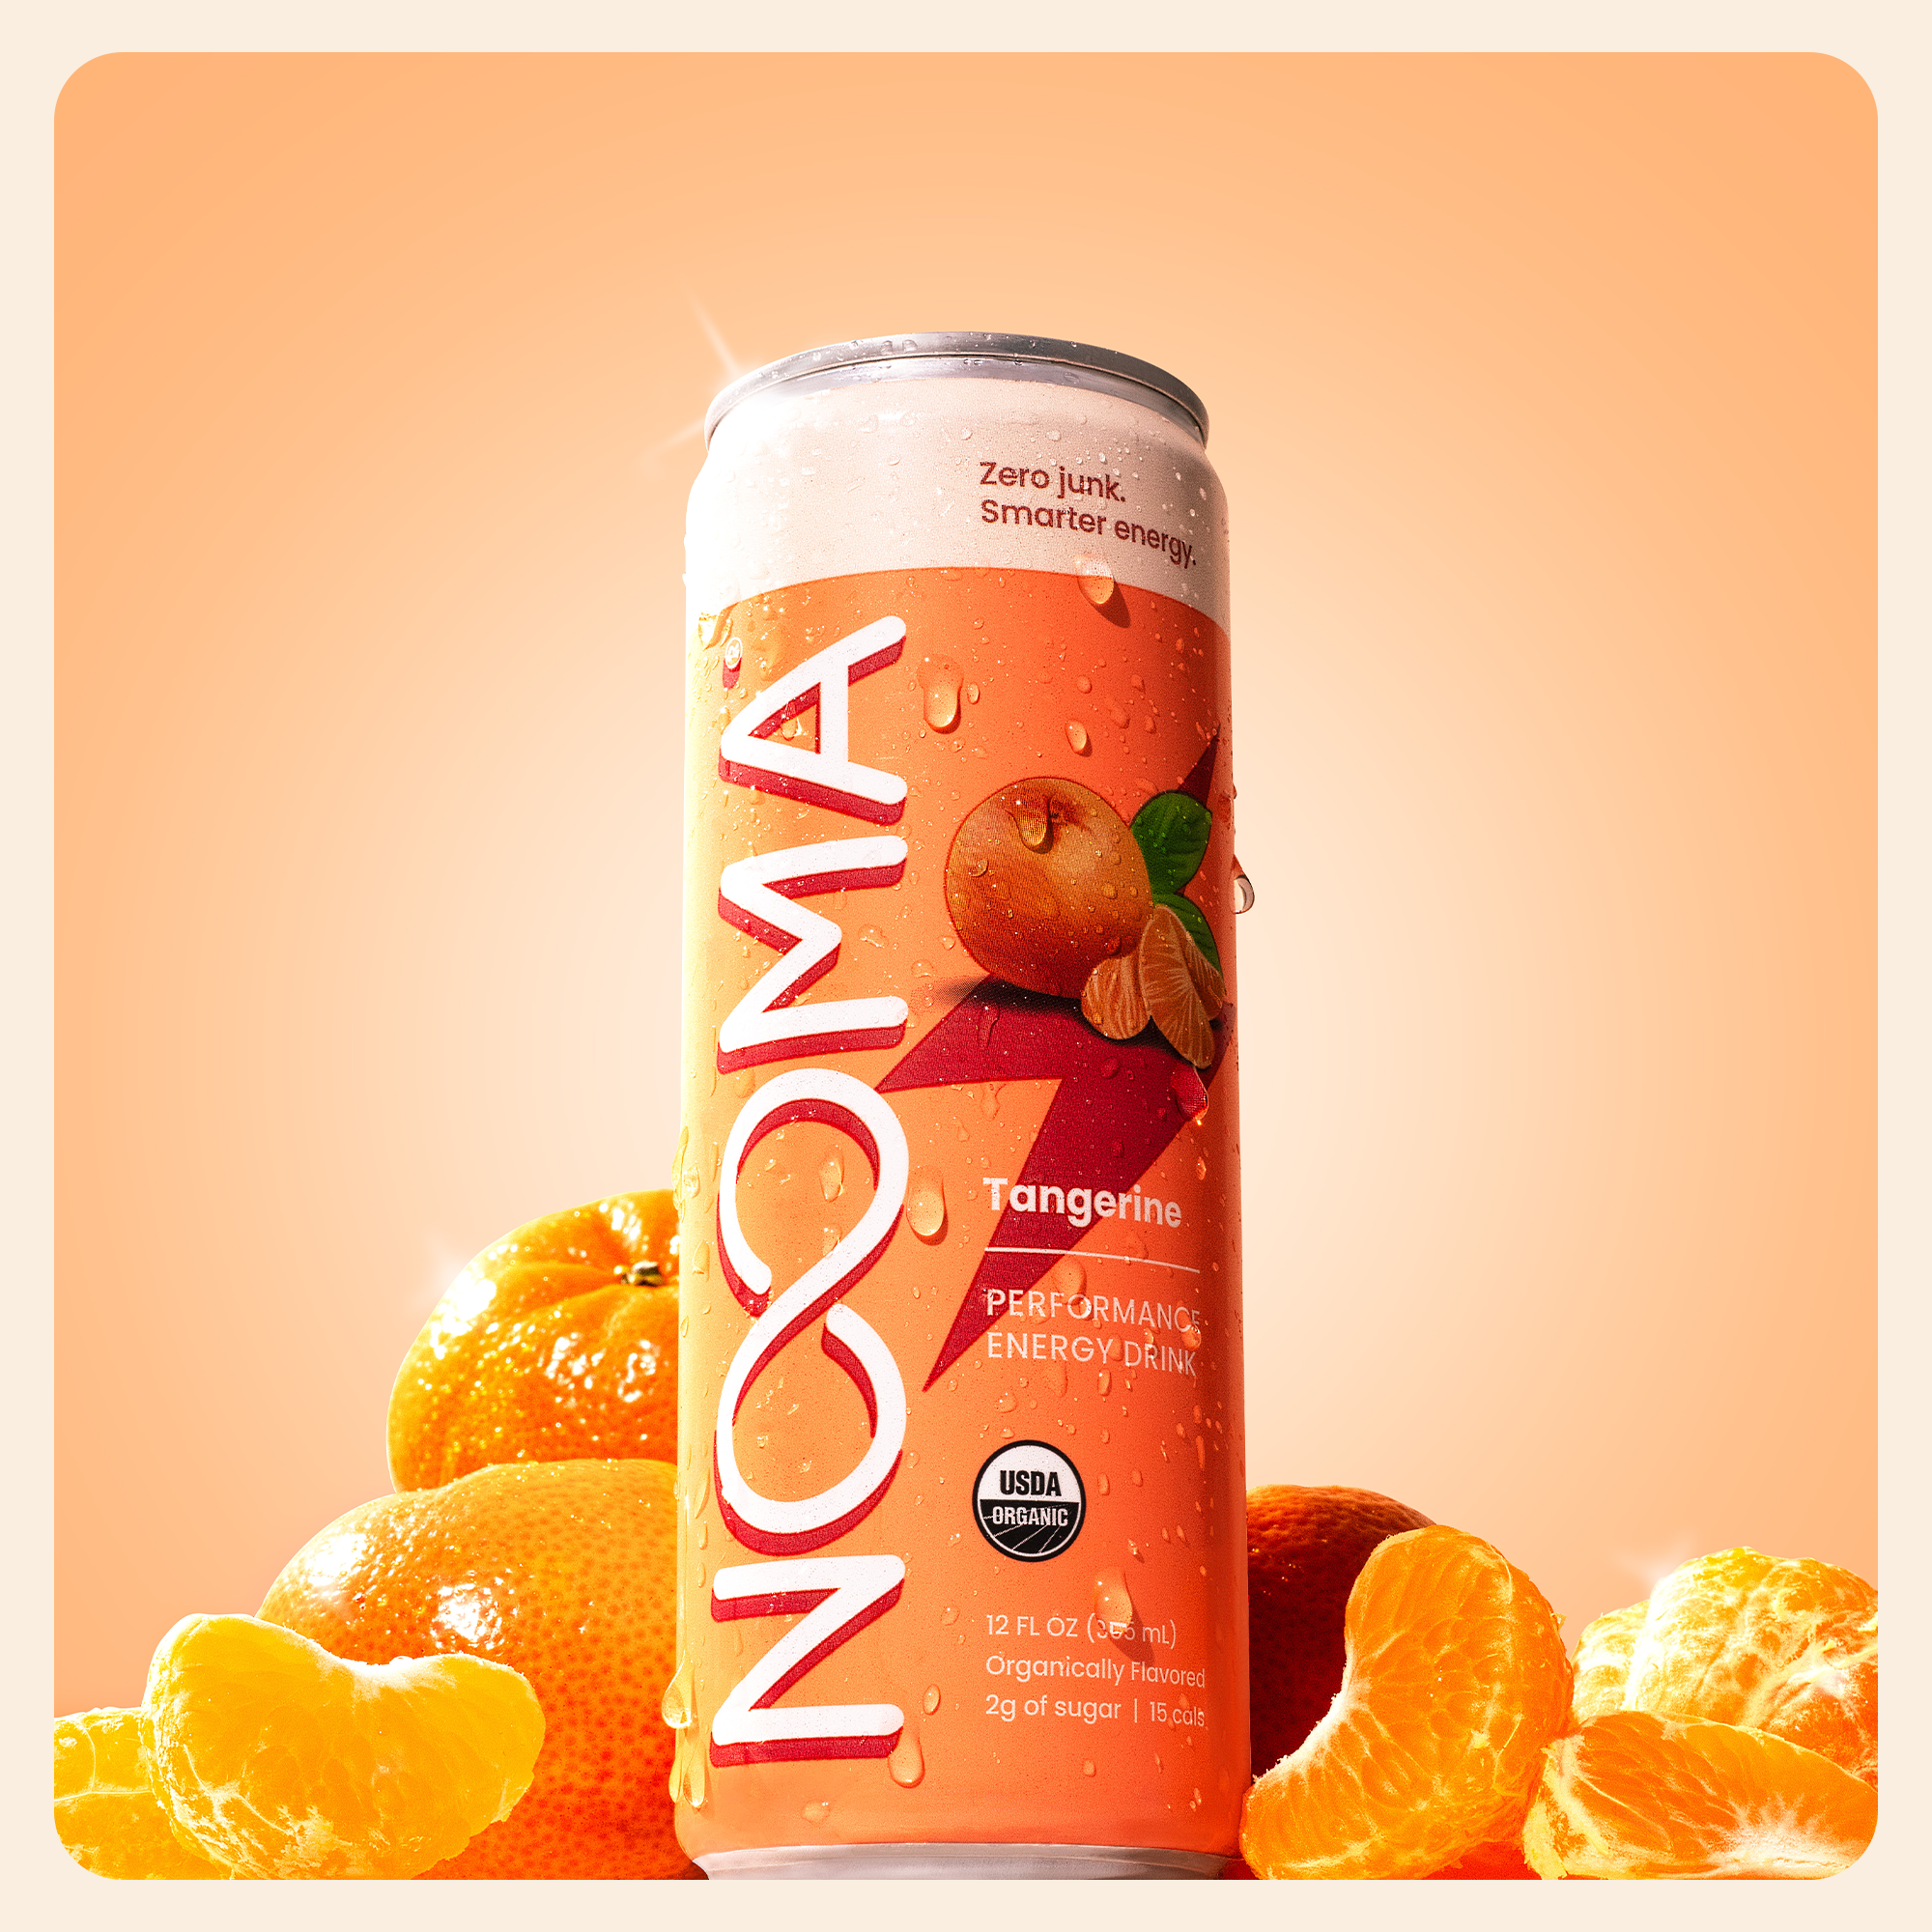 Nooma Energy Tangerine